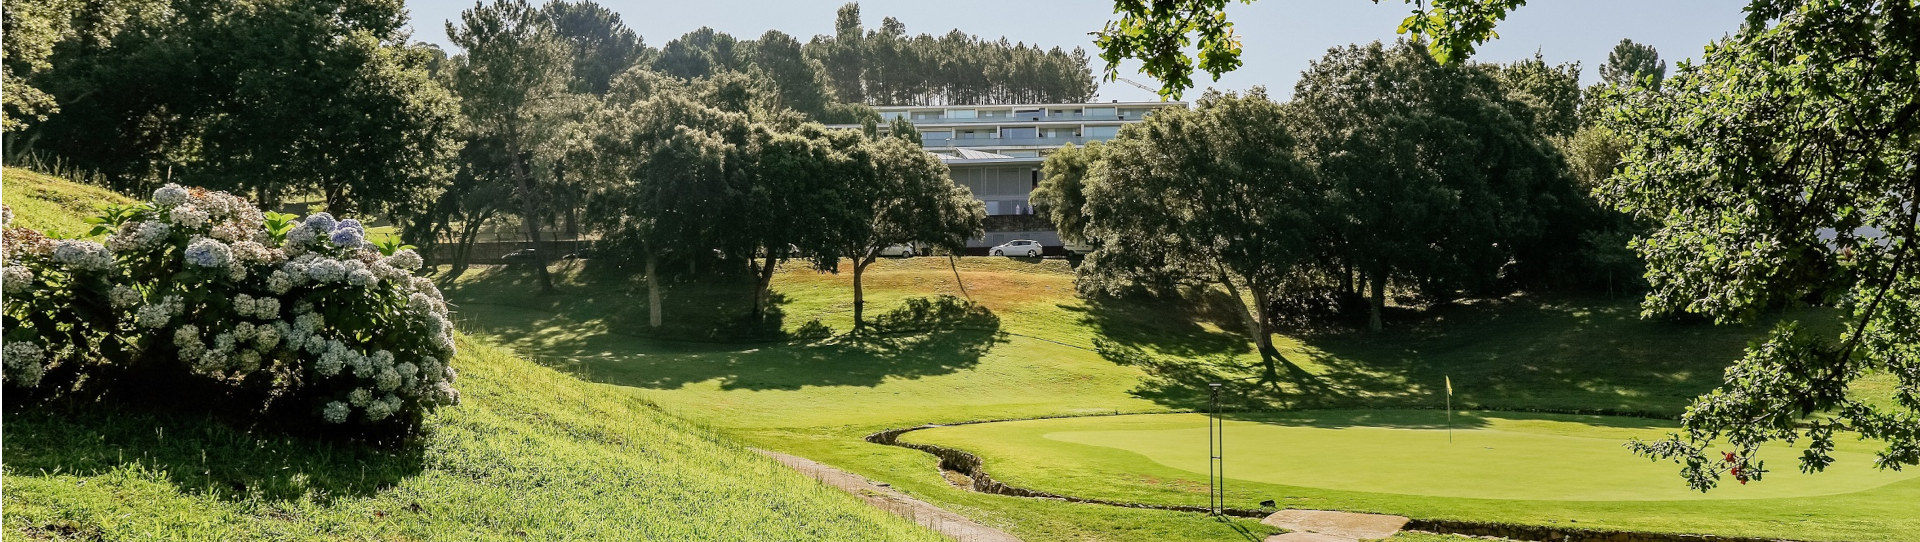 Portugal golf courses - Ponte de Lima - Photo 1